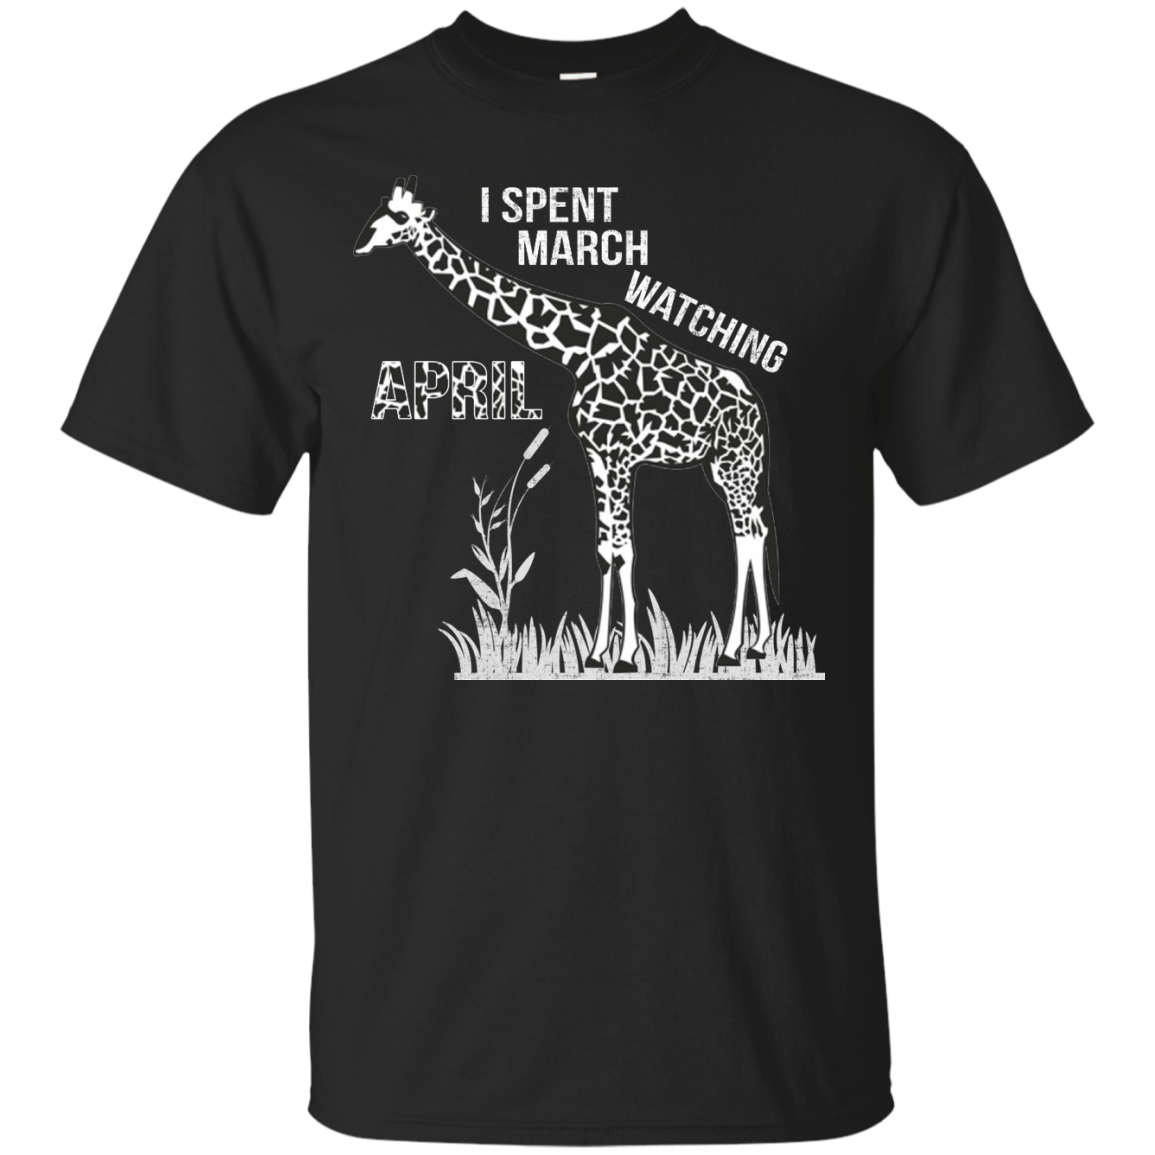 Giraffe: I Spent March Watching April shirt, sweater, tank